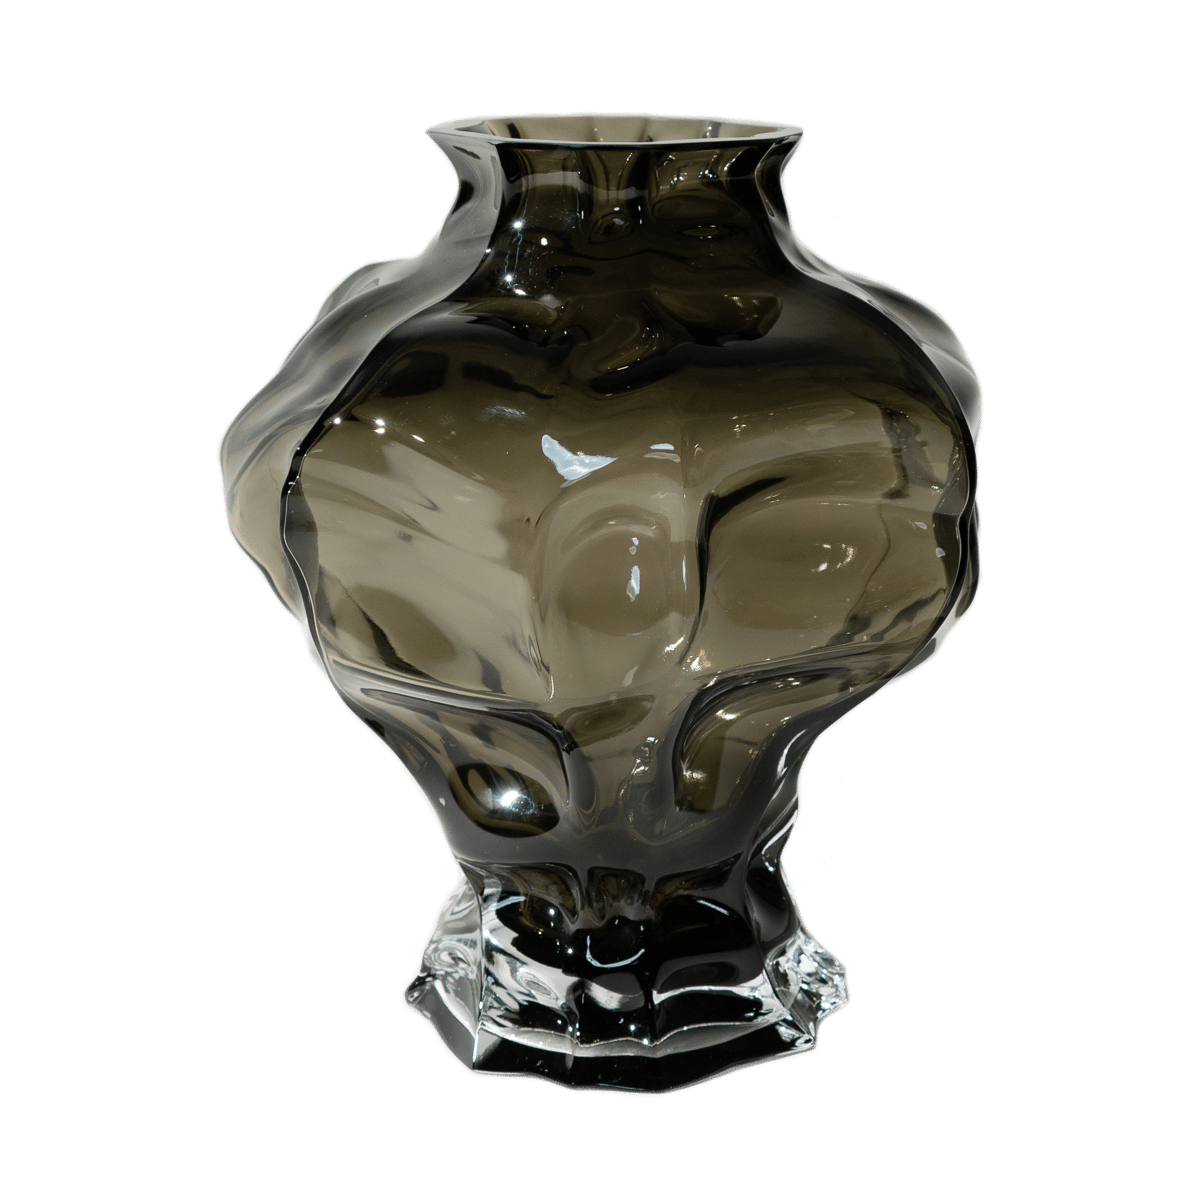 Hein Studio Ammonit vase 30 cm New Smoke